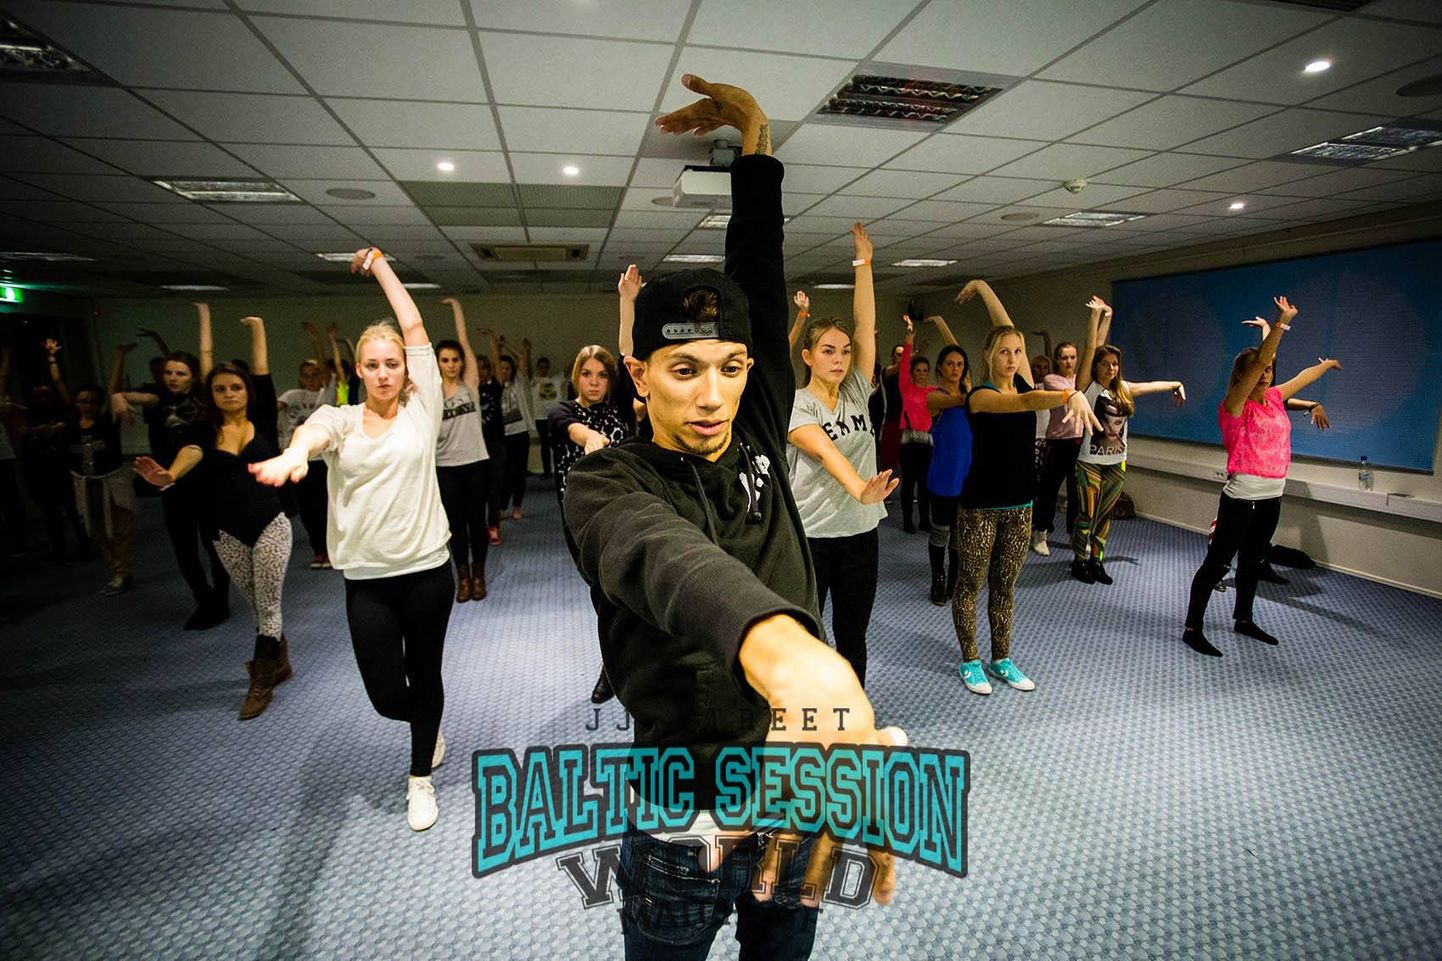 JJ-Street Baltic Session annab võimaluse õppida Michael Jacksoni koreograafilt